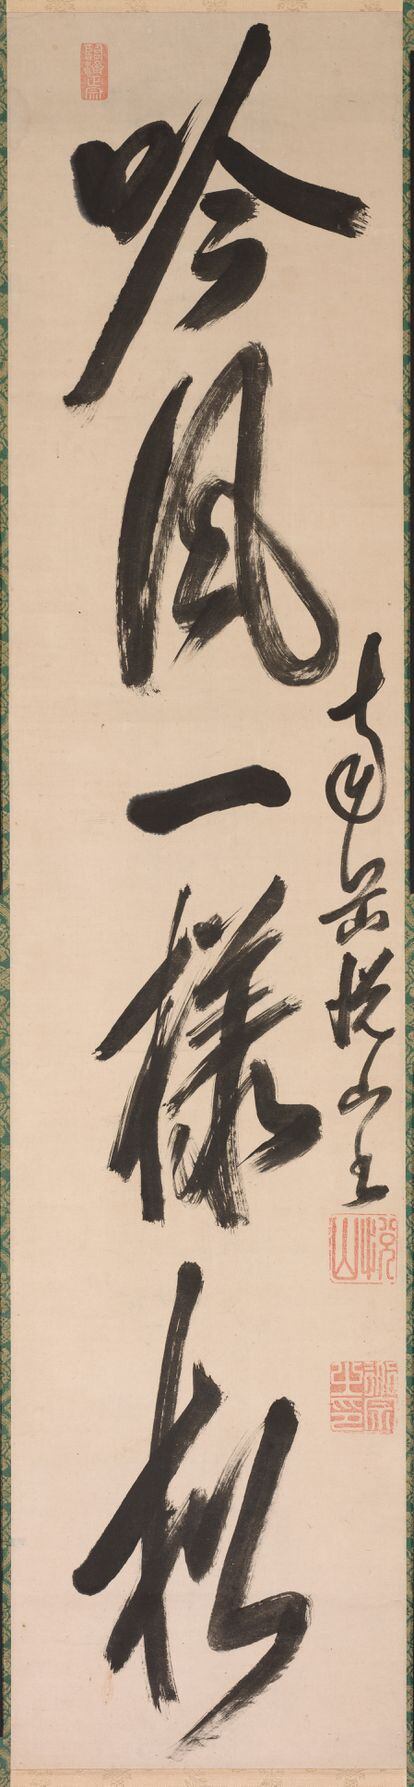 Línea de un poema de Han Shan, en caligrafía de un monje chino del siglo XVII.